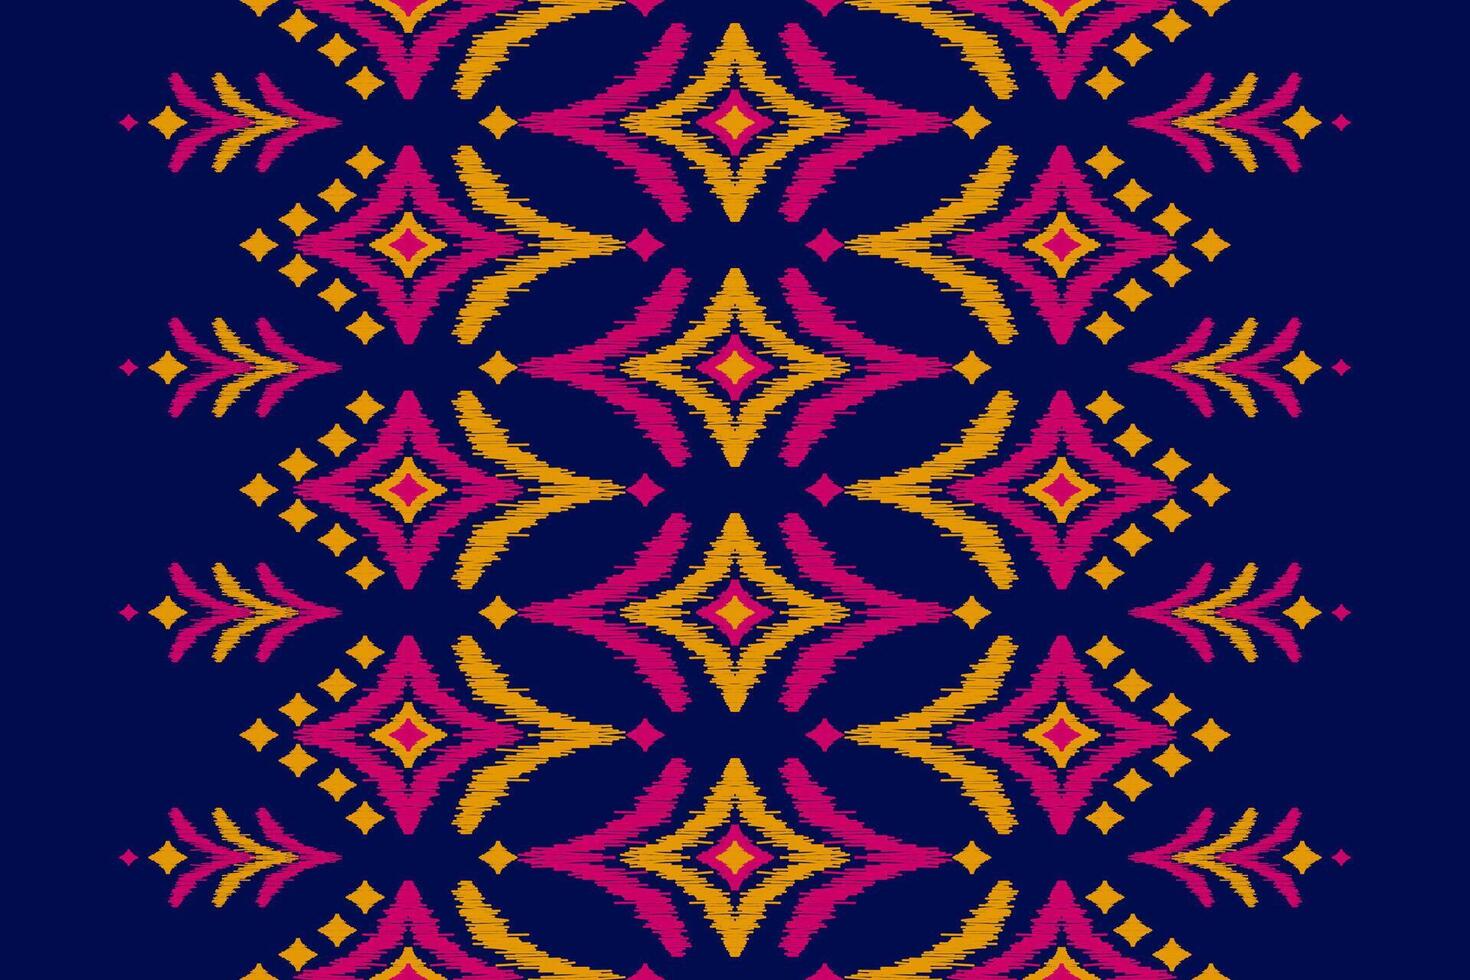 arte de padrão étnico de tapete. ikat sem costura padrão étnico em tribal. vetor